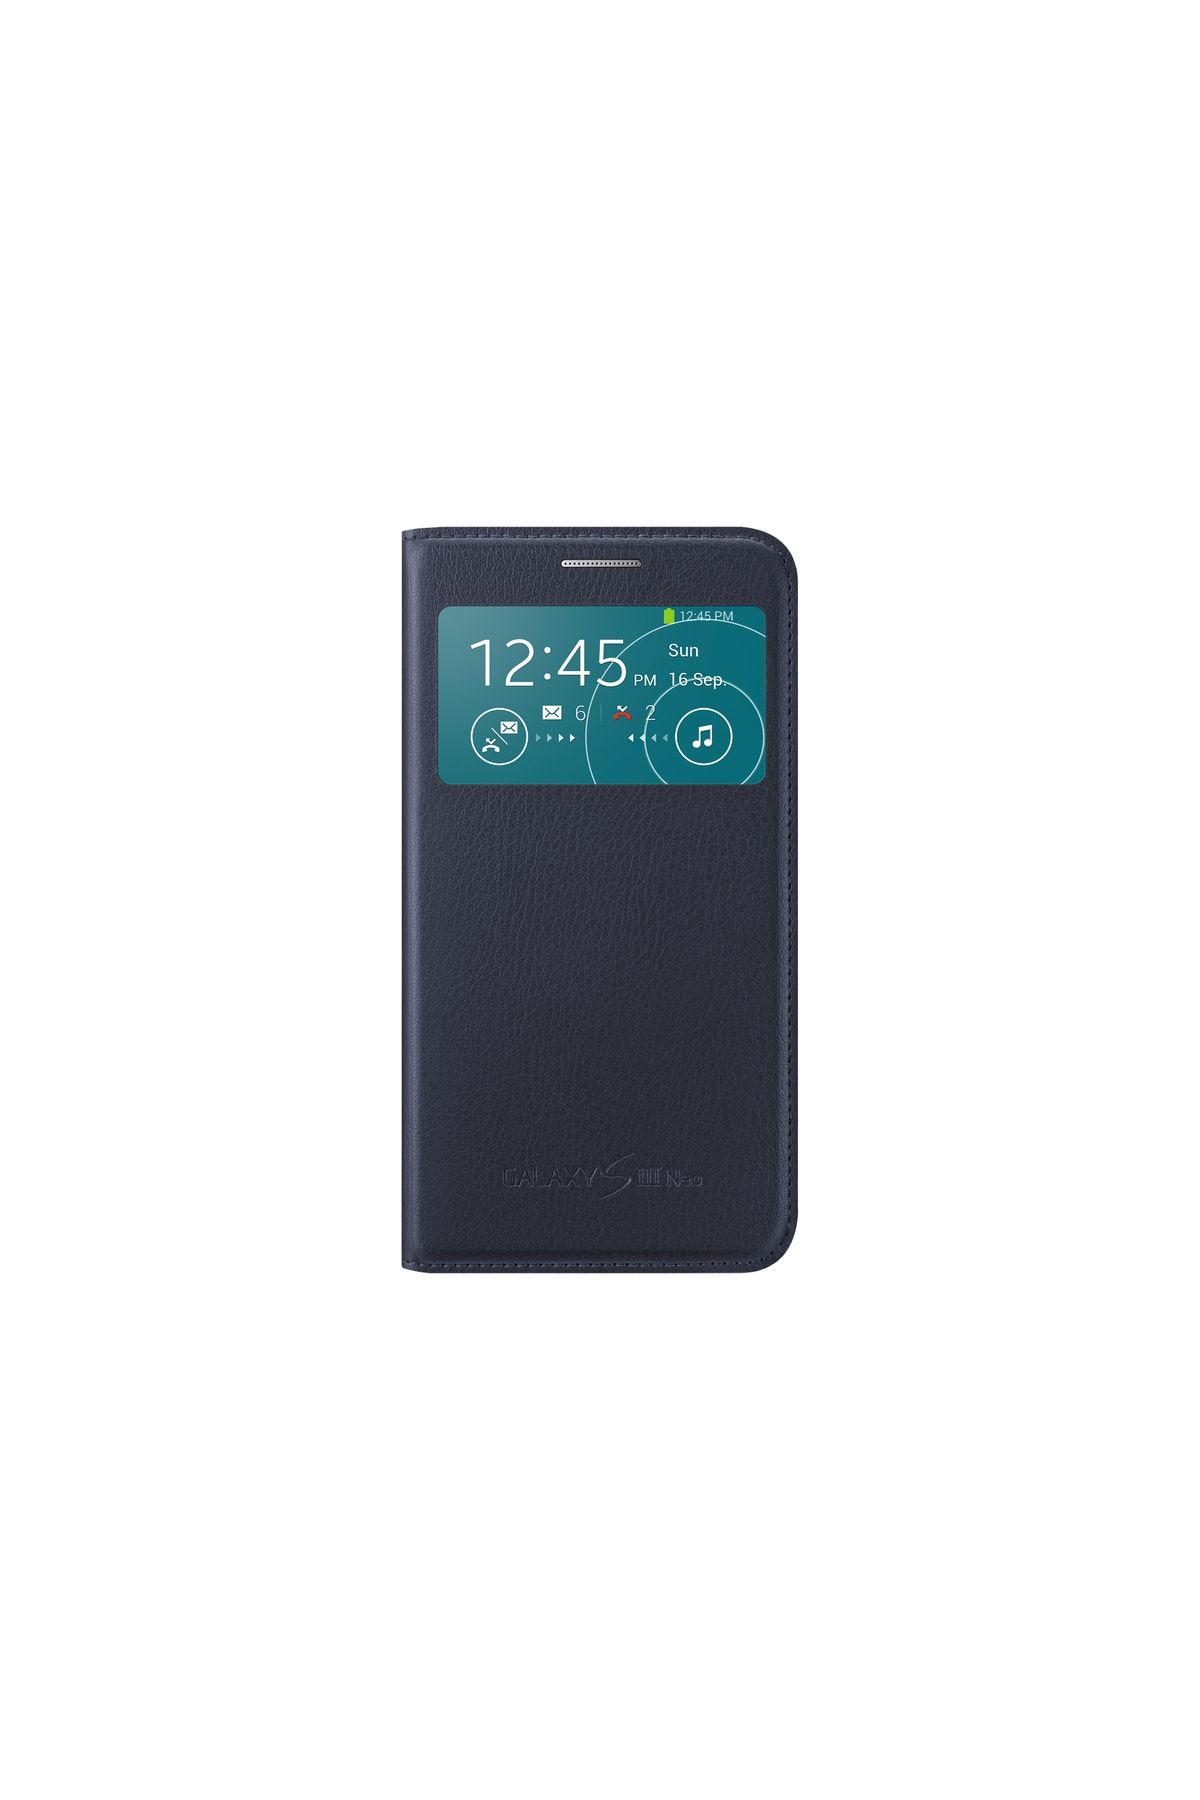 Samsung S3 Neo S-view Kılıf Indigo Mavi Ef-cı930blegww